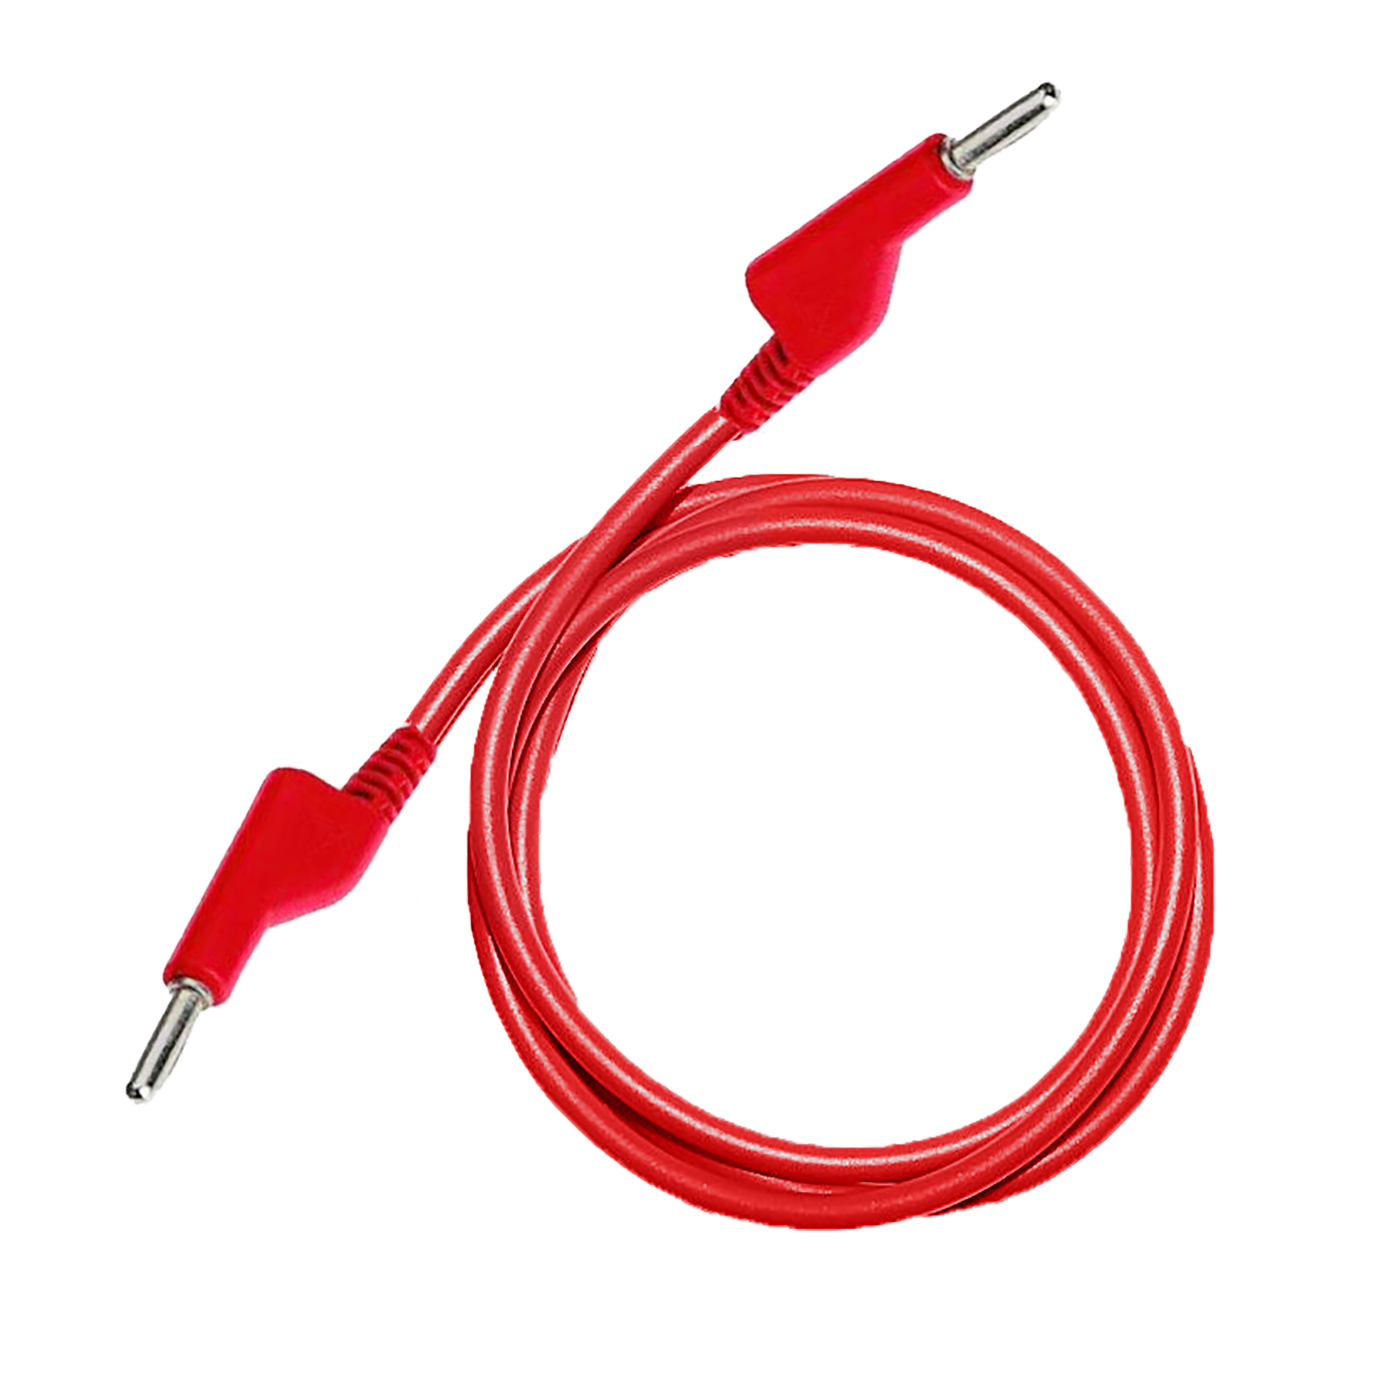 Testovací / laboratorní kabel Ø4 mm Barva: Červená, Model: Banánek-banánek, Rozměr: 200 cm